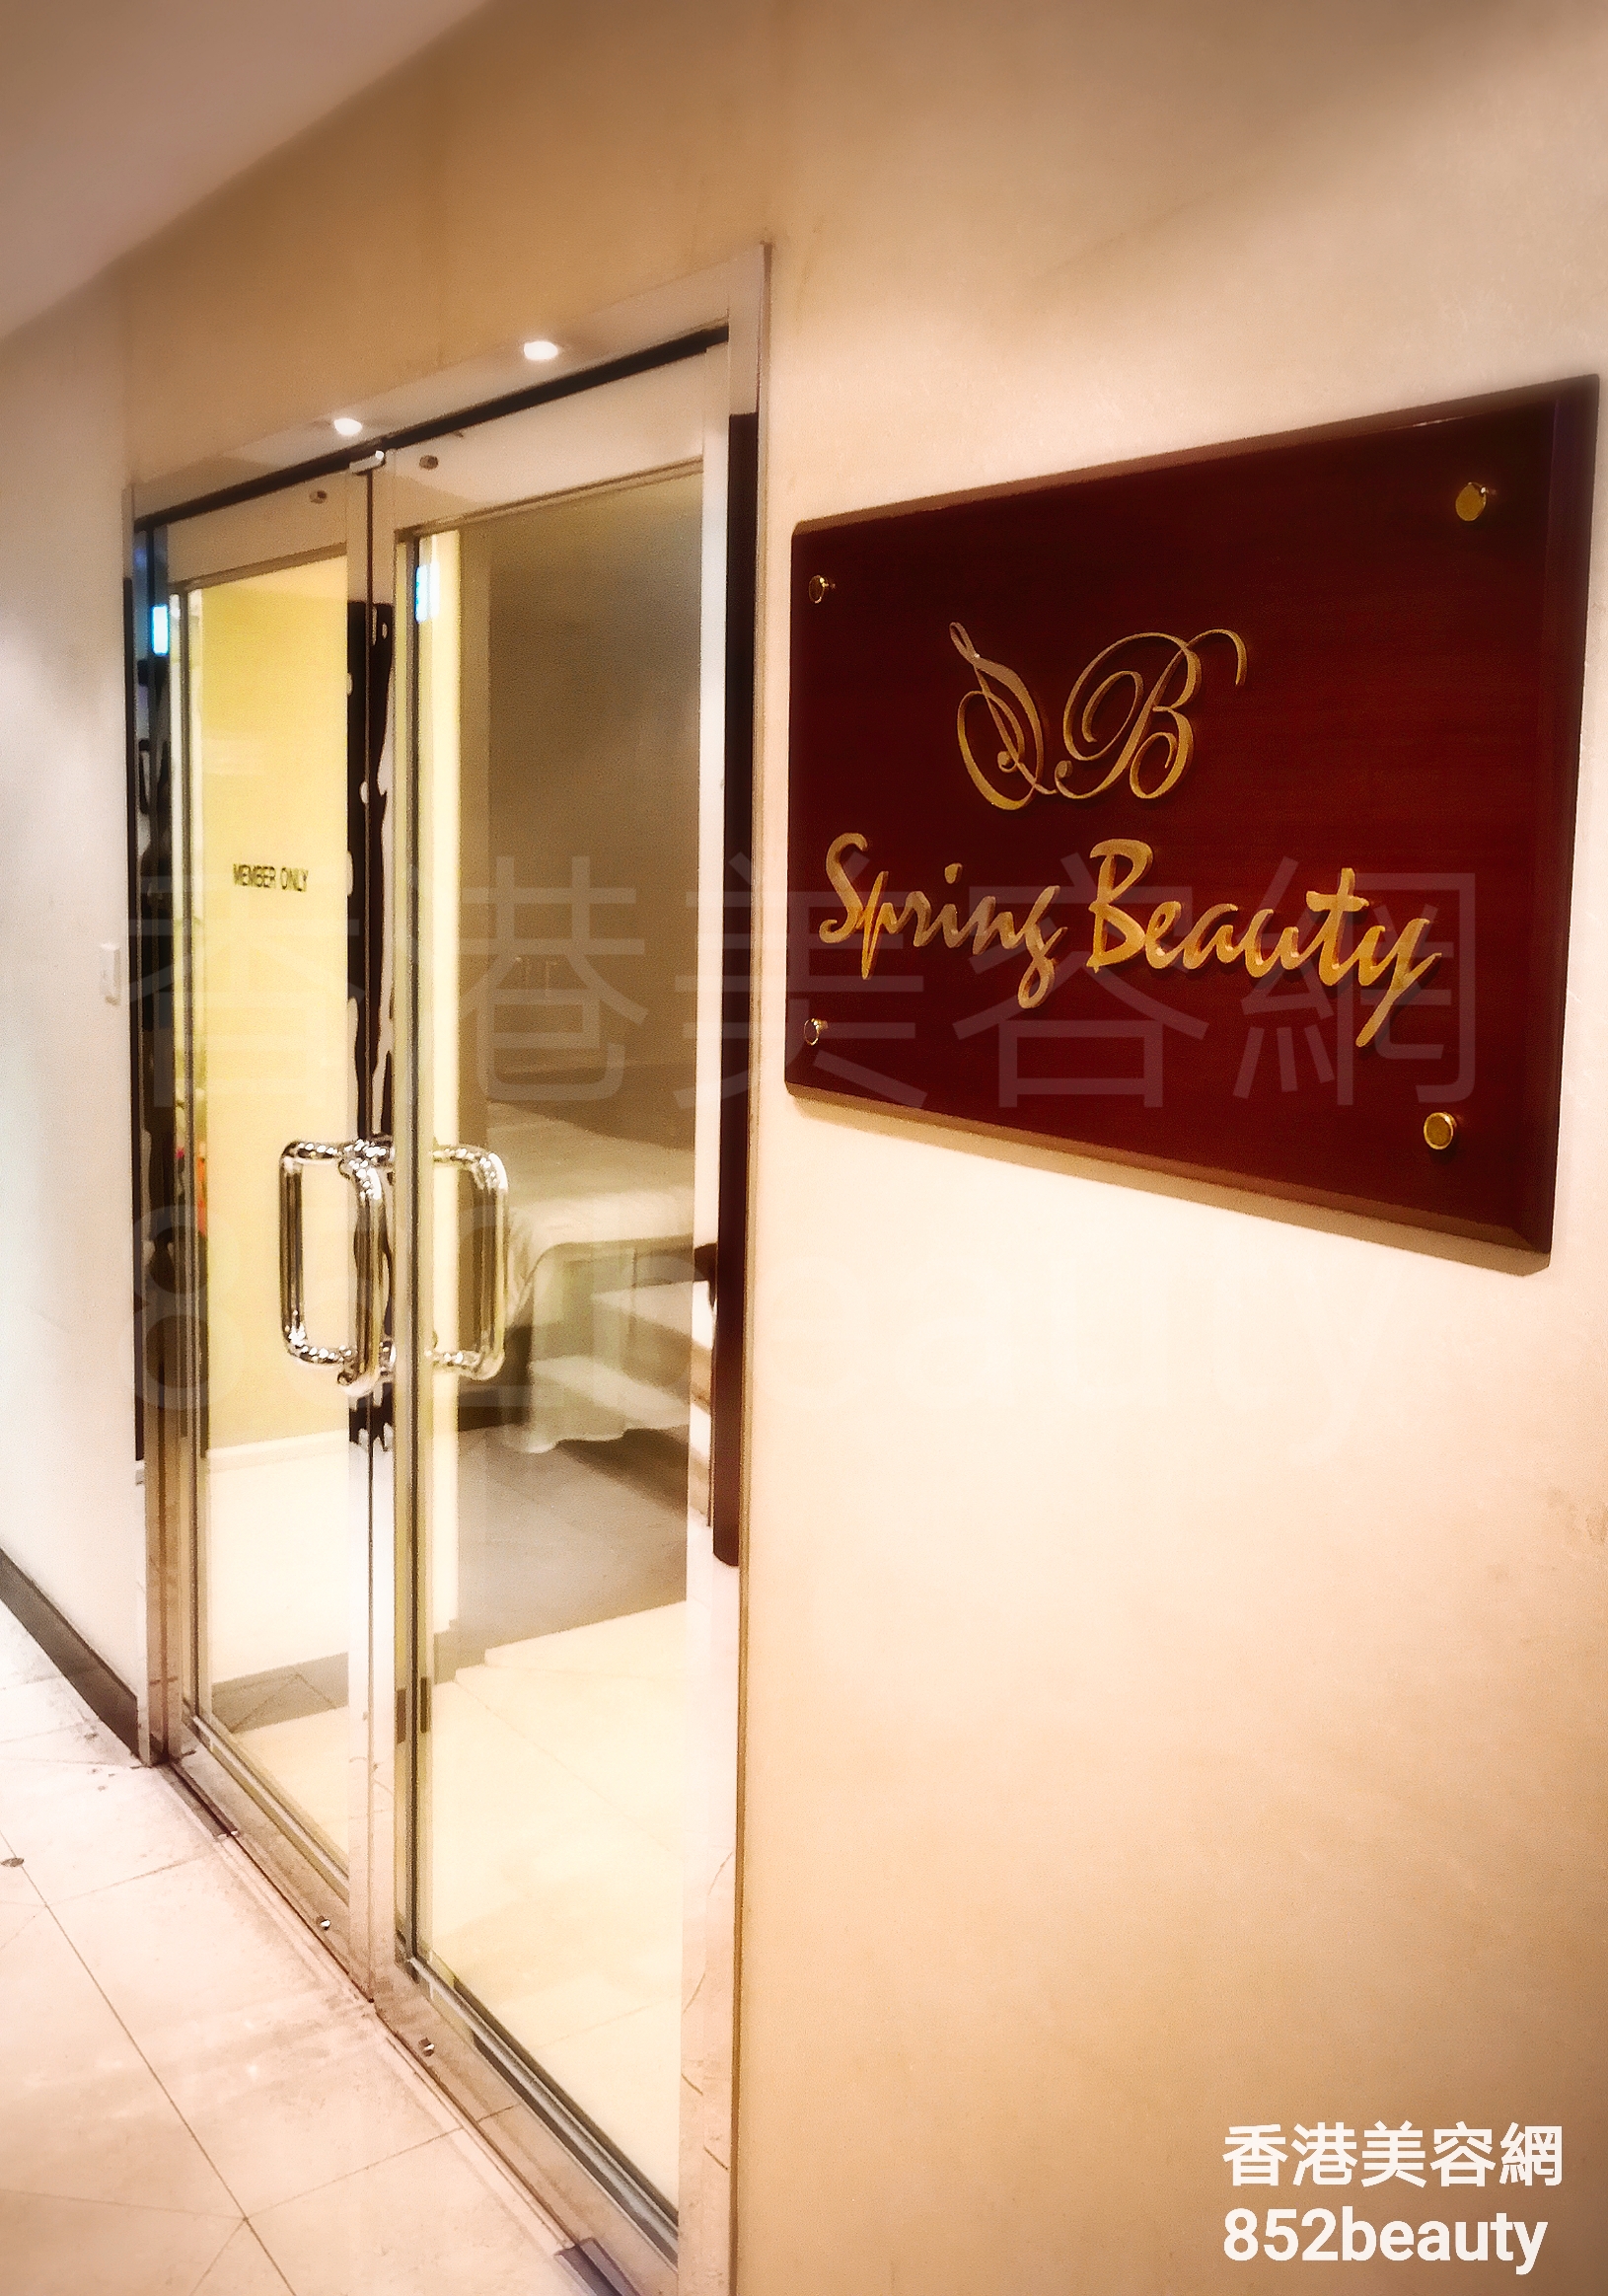 香港美容網 Hong Kong Beauty Salon 美容院 / 美容師: Spring Beauty